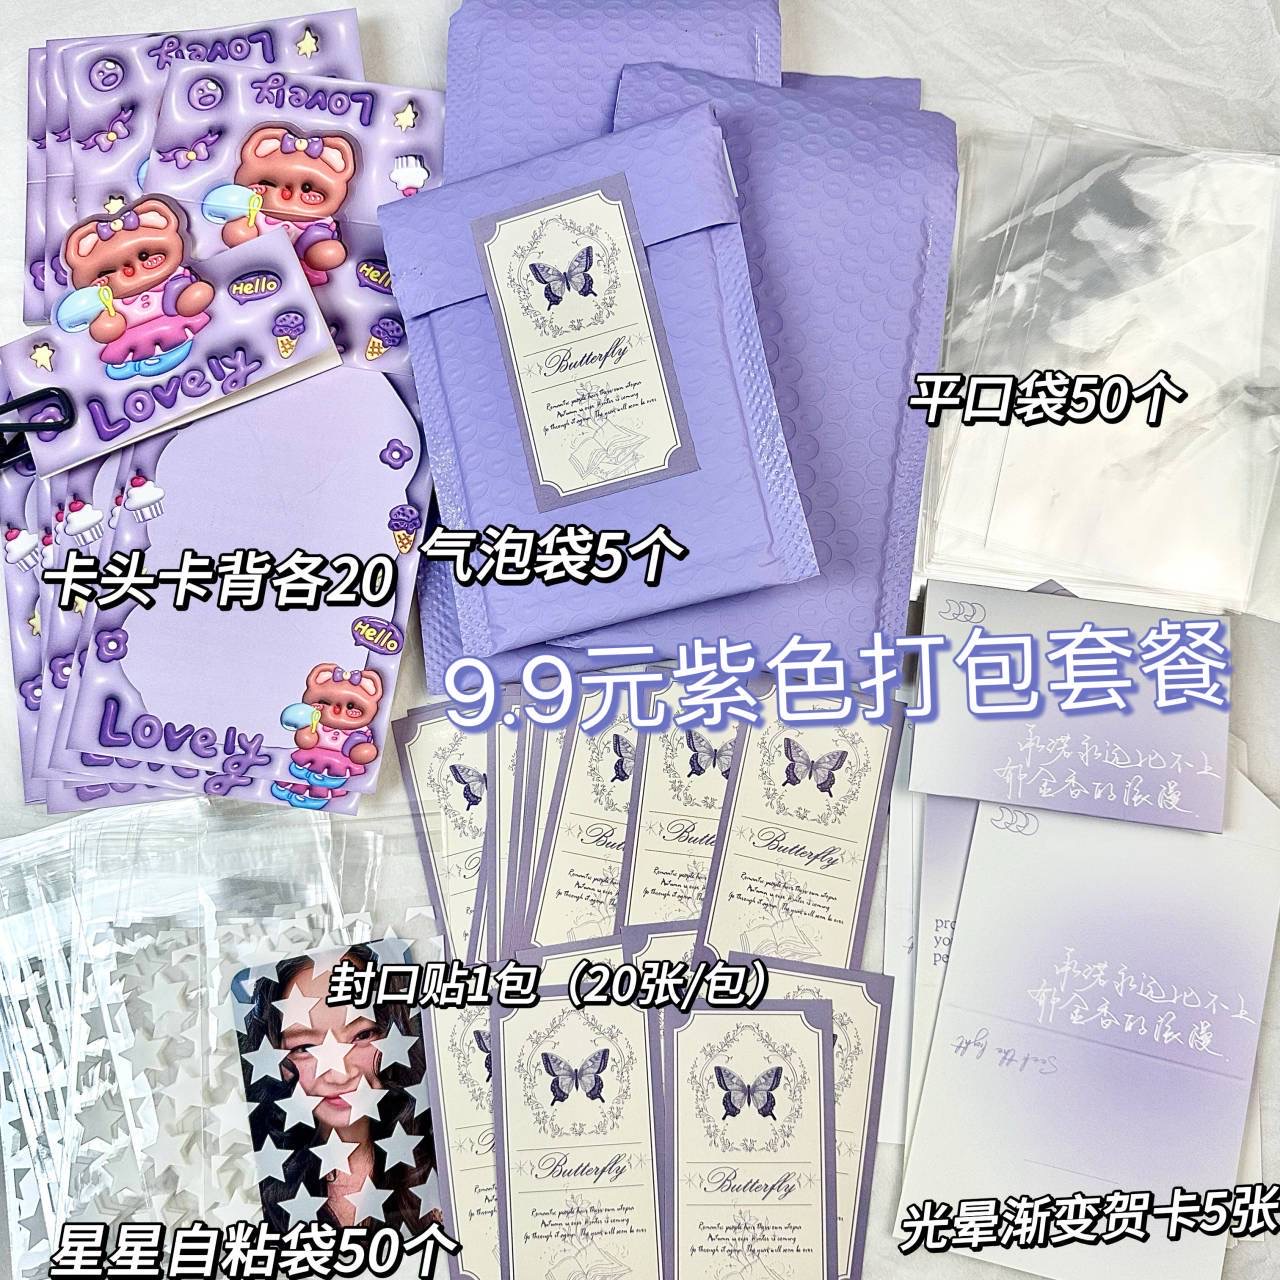 9.9 包邮 材料 170件ins紫色系出卡打包套餐超值福袋随心配礼物包装